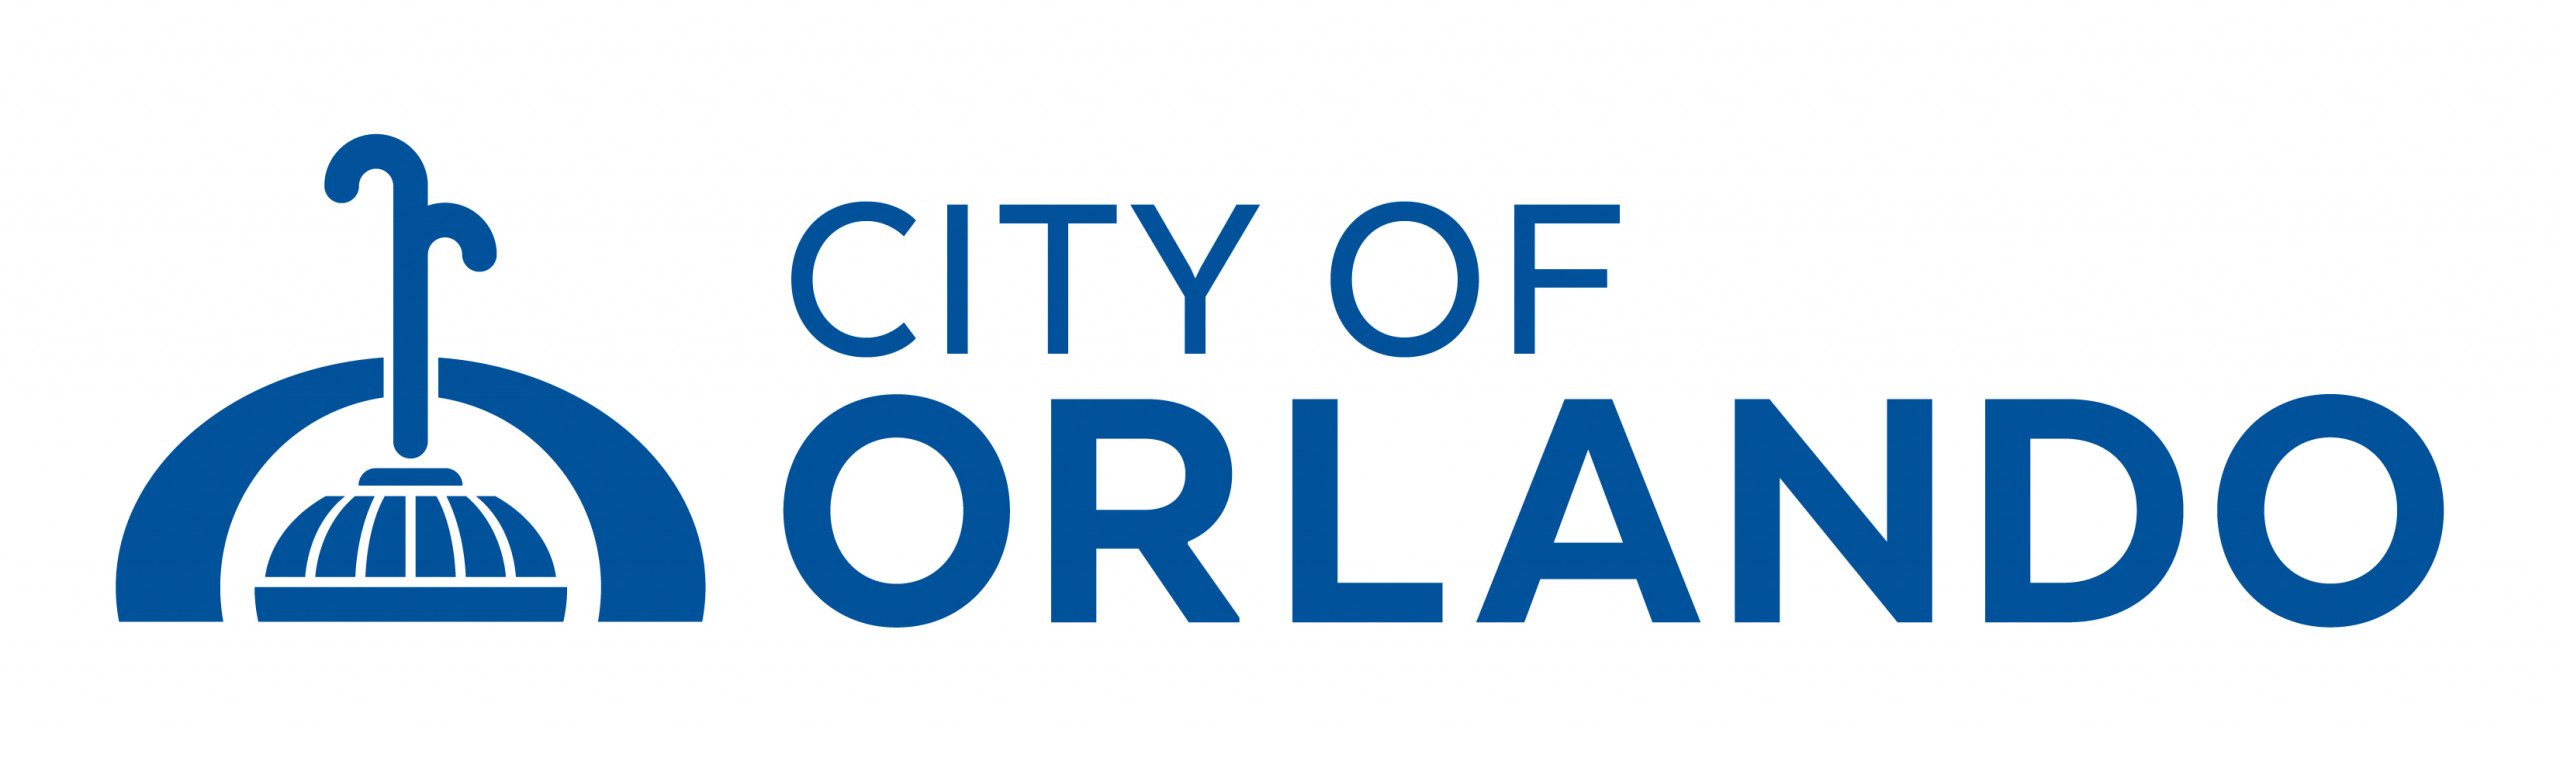 City of Orlando logo